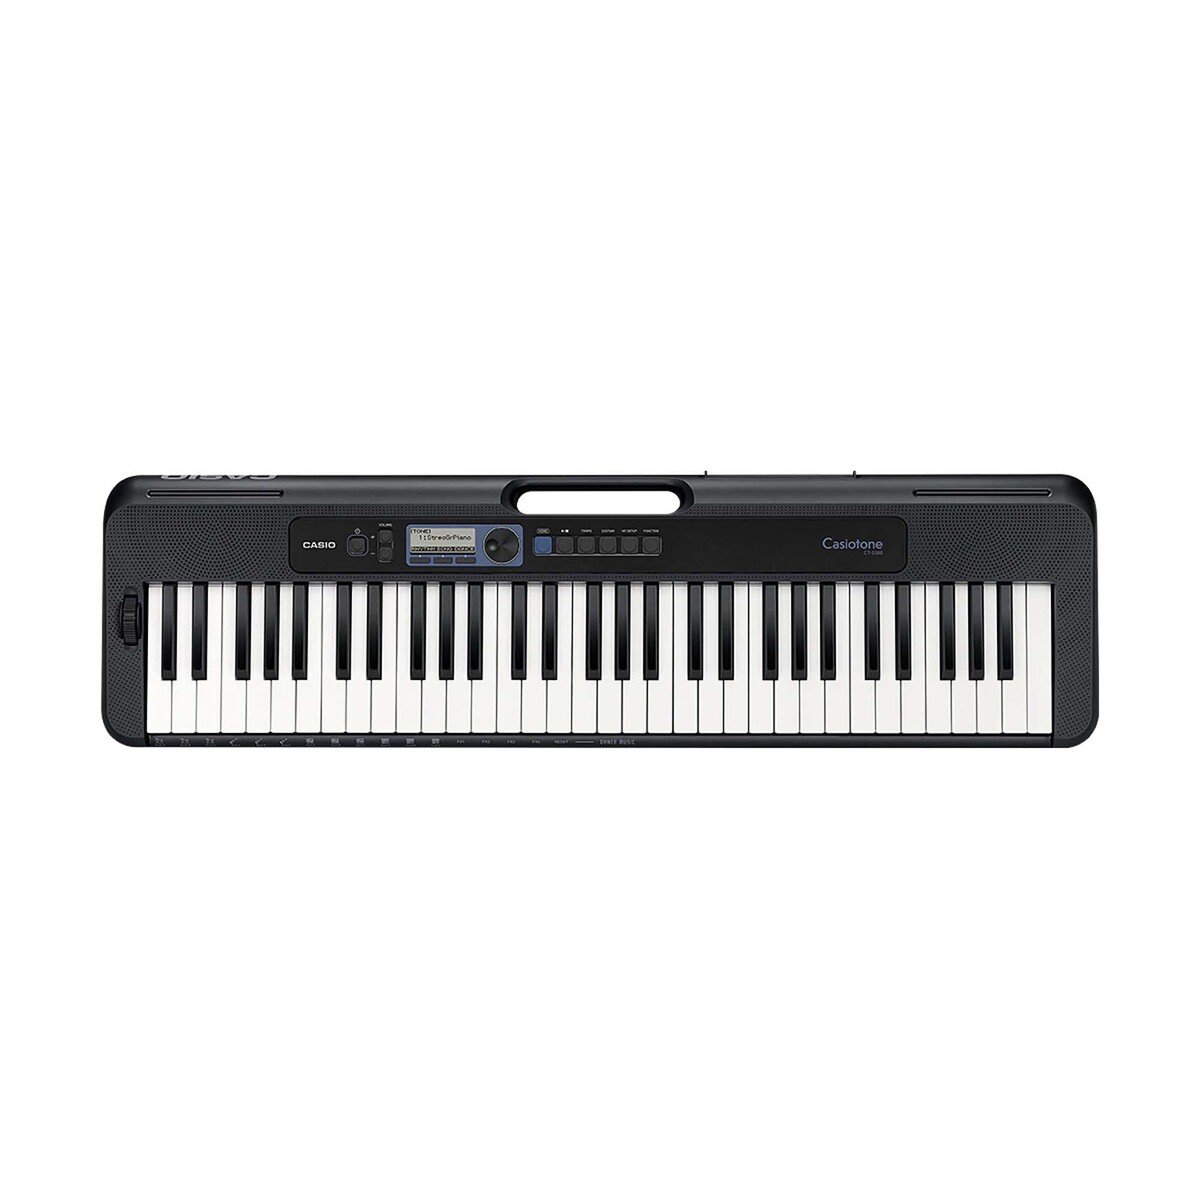 Casio Keyboard CTS-300 61 Keys